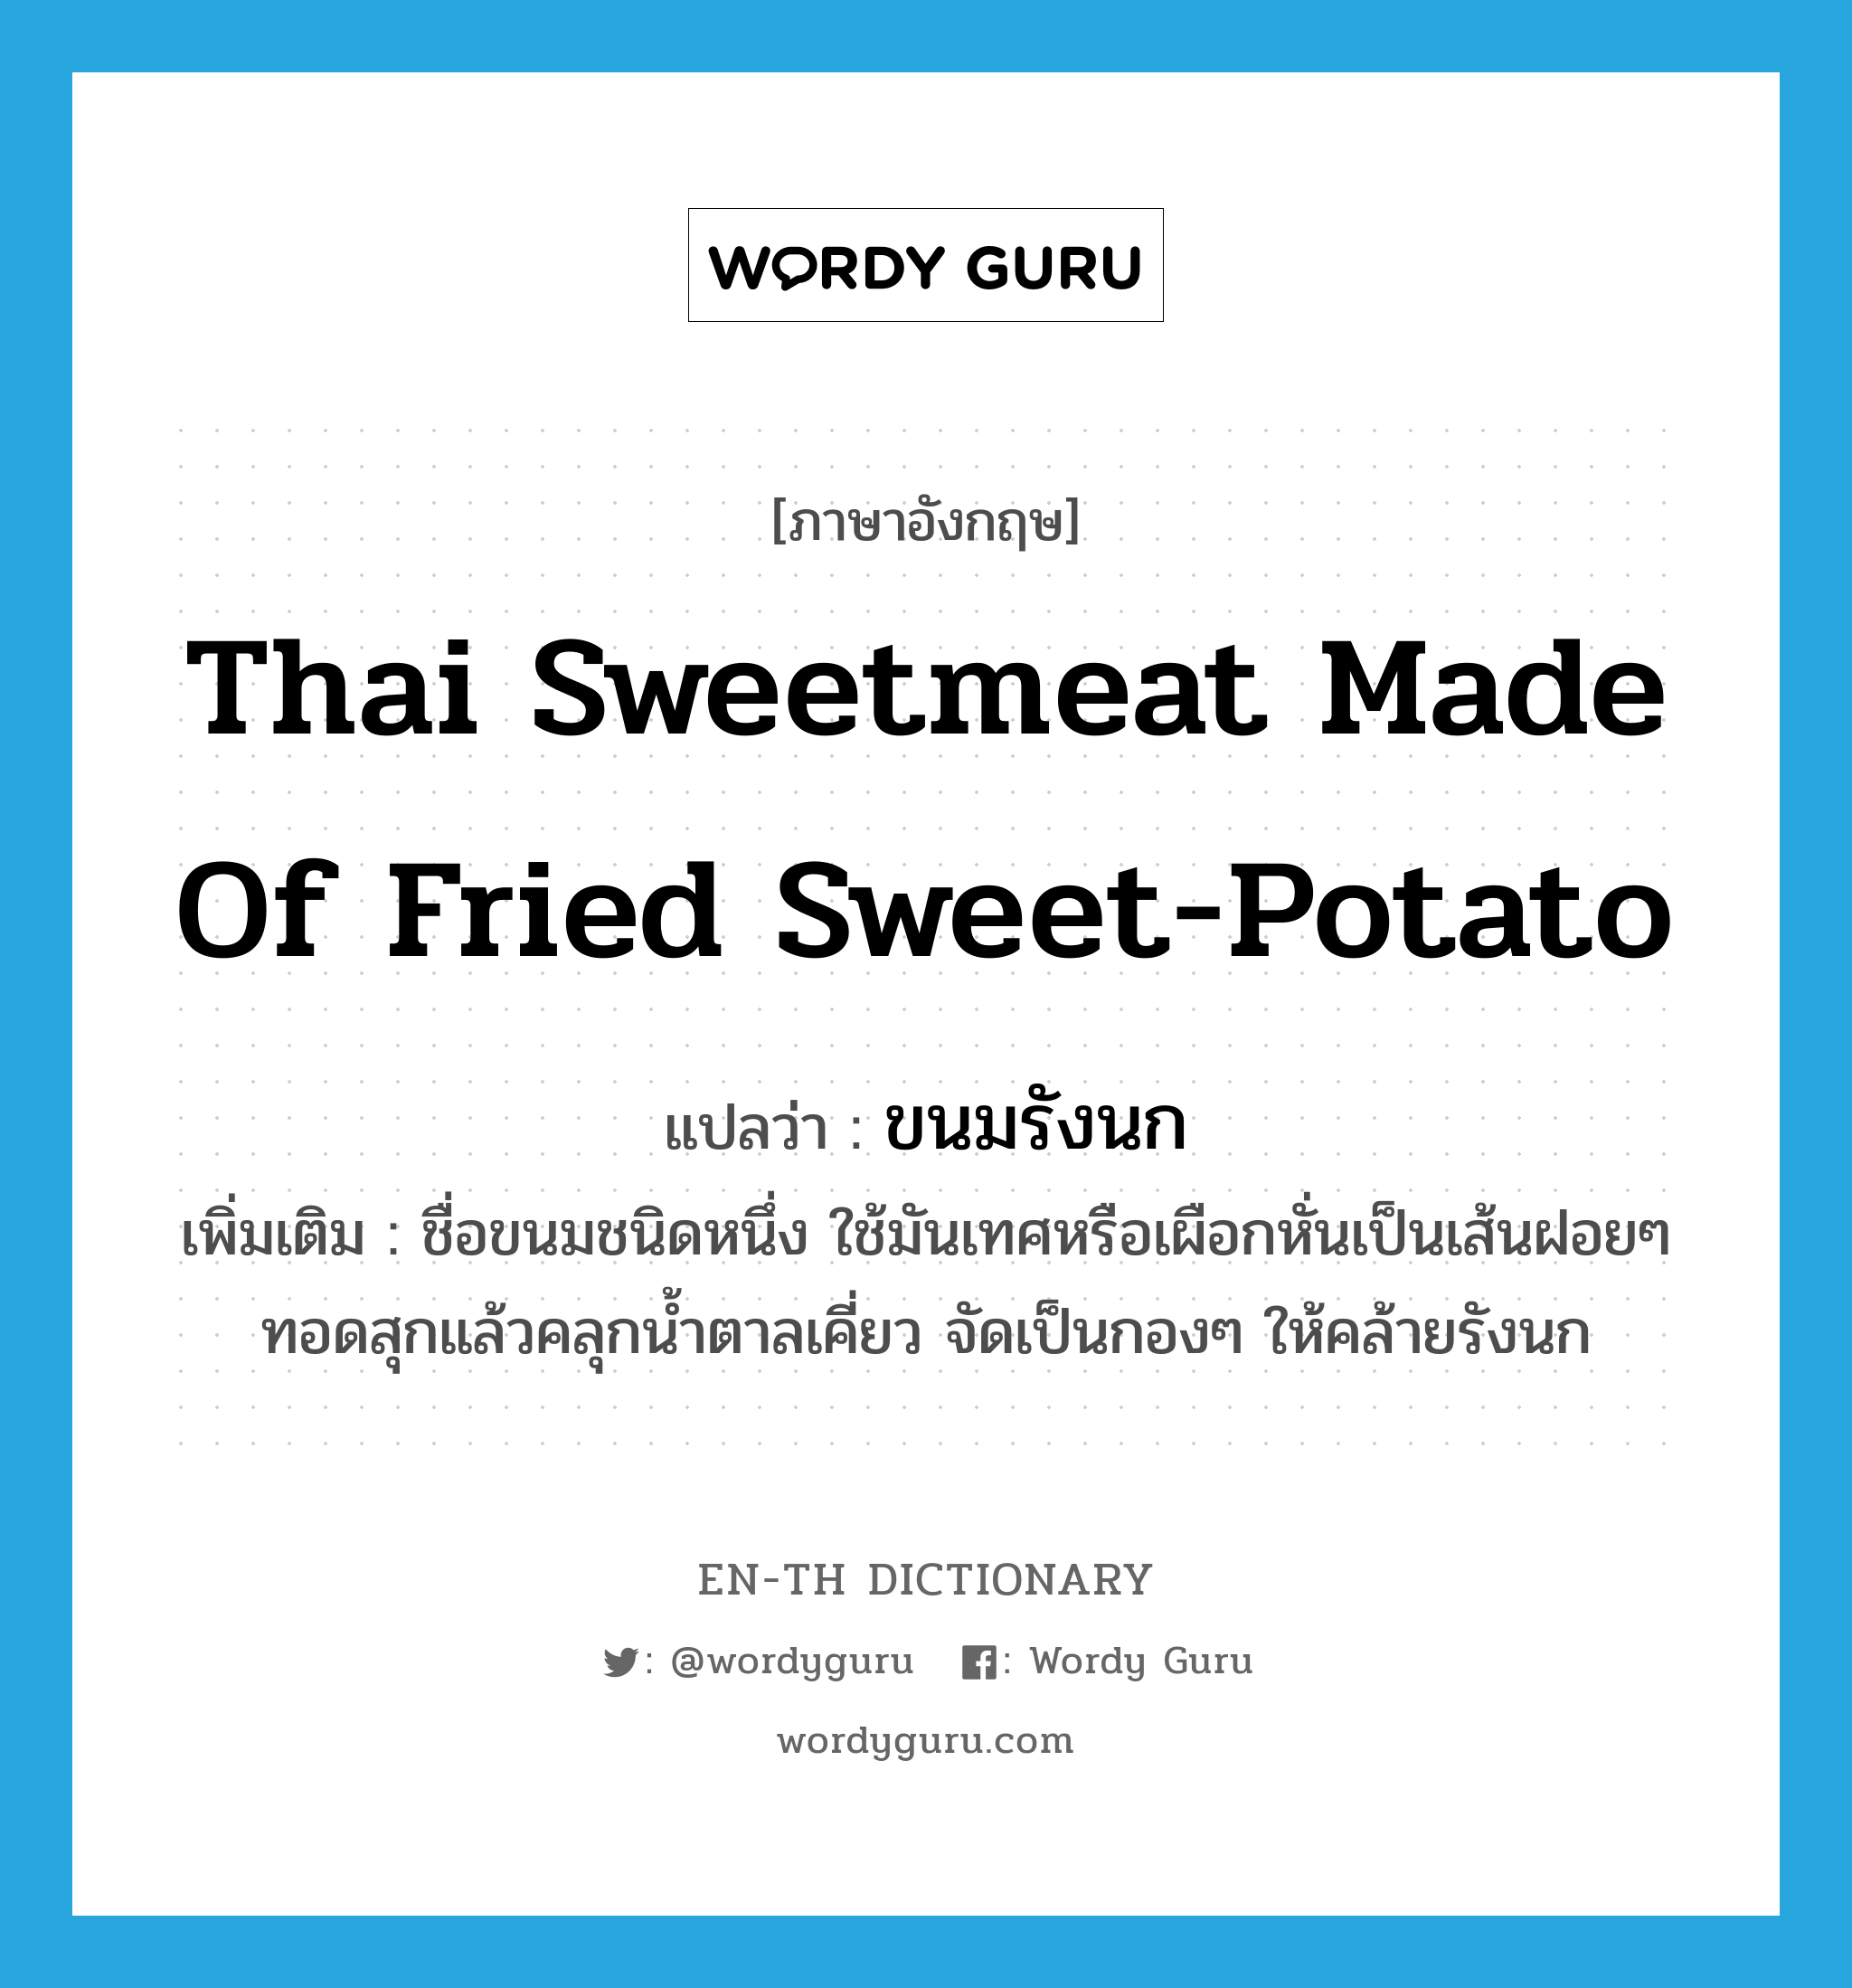 Thai sweetmeat made of fried sweet-potato แปลว่า?, คำศัพท์ภาษาอังกฤษ Thai sweetmeat made of fried sweet-potato แปลว่า ขนมรังนก ประเภท N เพิ่มเติม ชื่อขนมชนิดหนึ่ง ใช้มันเทศหรือเผือกหั่นเป็นเส้นฝอยๆ ทอดสุกแล้วคลุกน้ำตาลเคี่ยว จัดเป็นกองๆ ให้คล้ายรังนก หมวด N